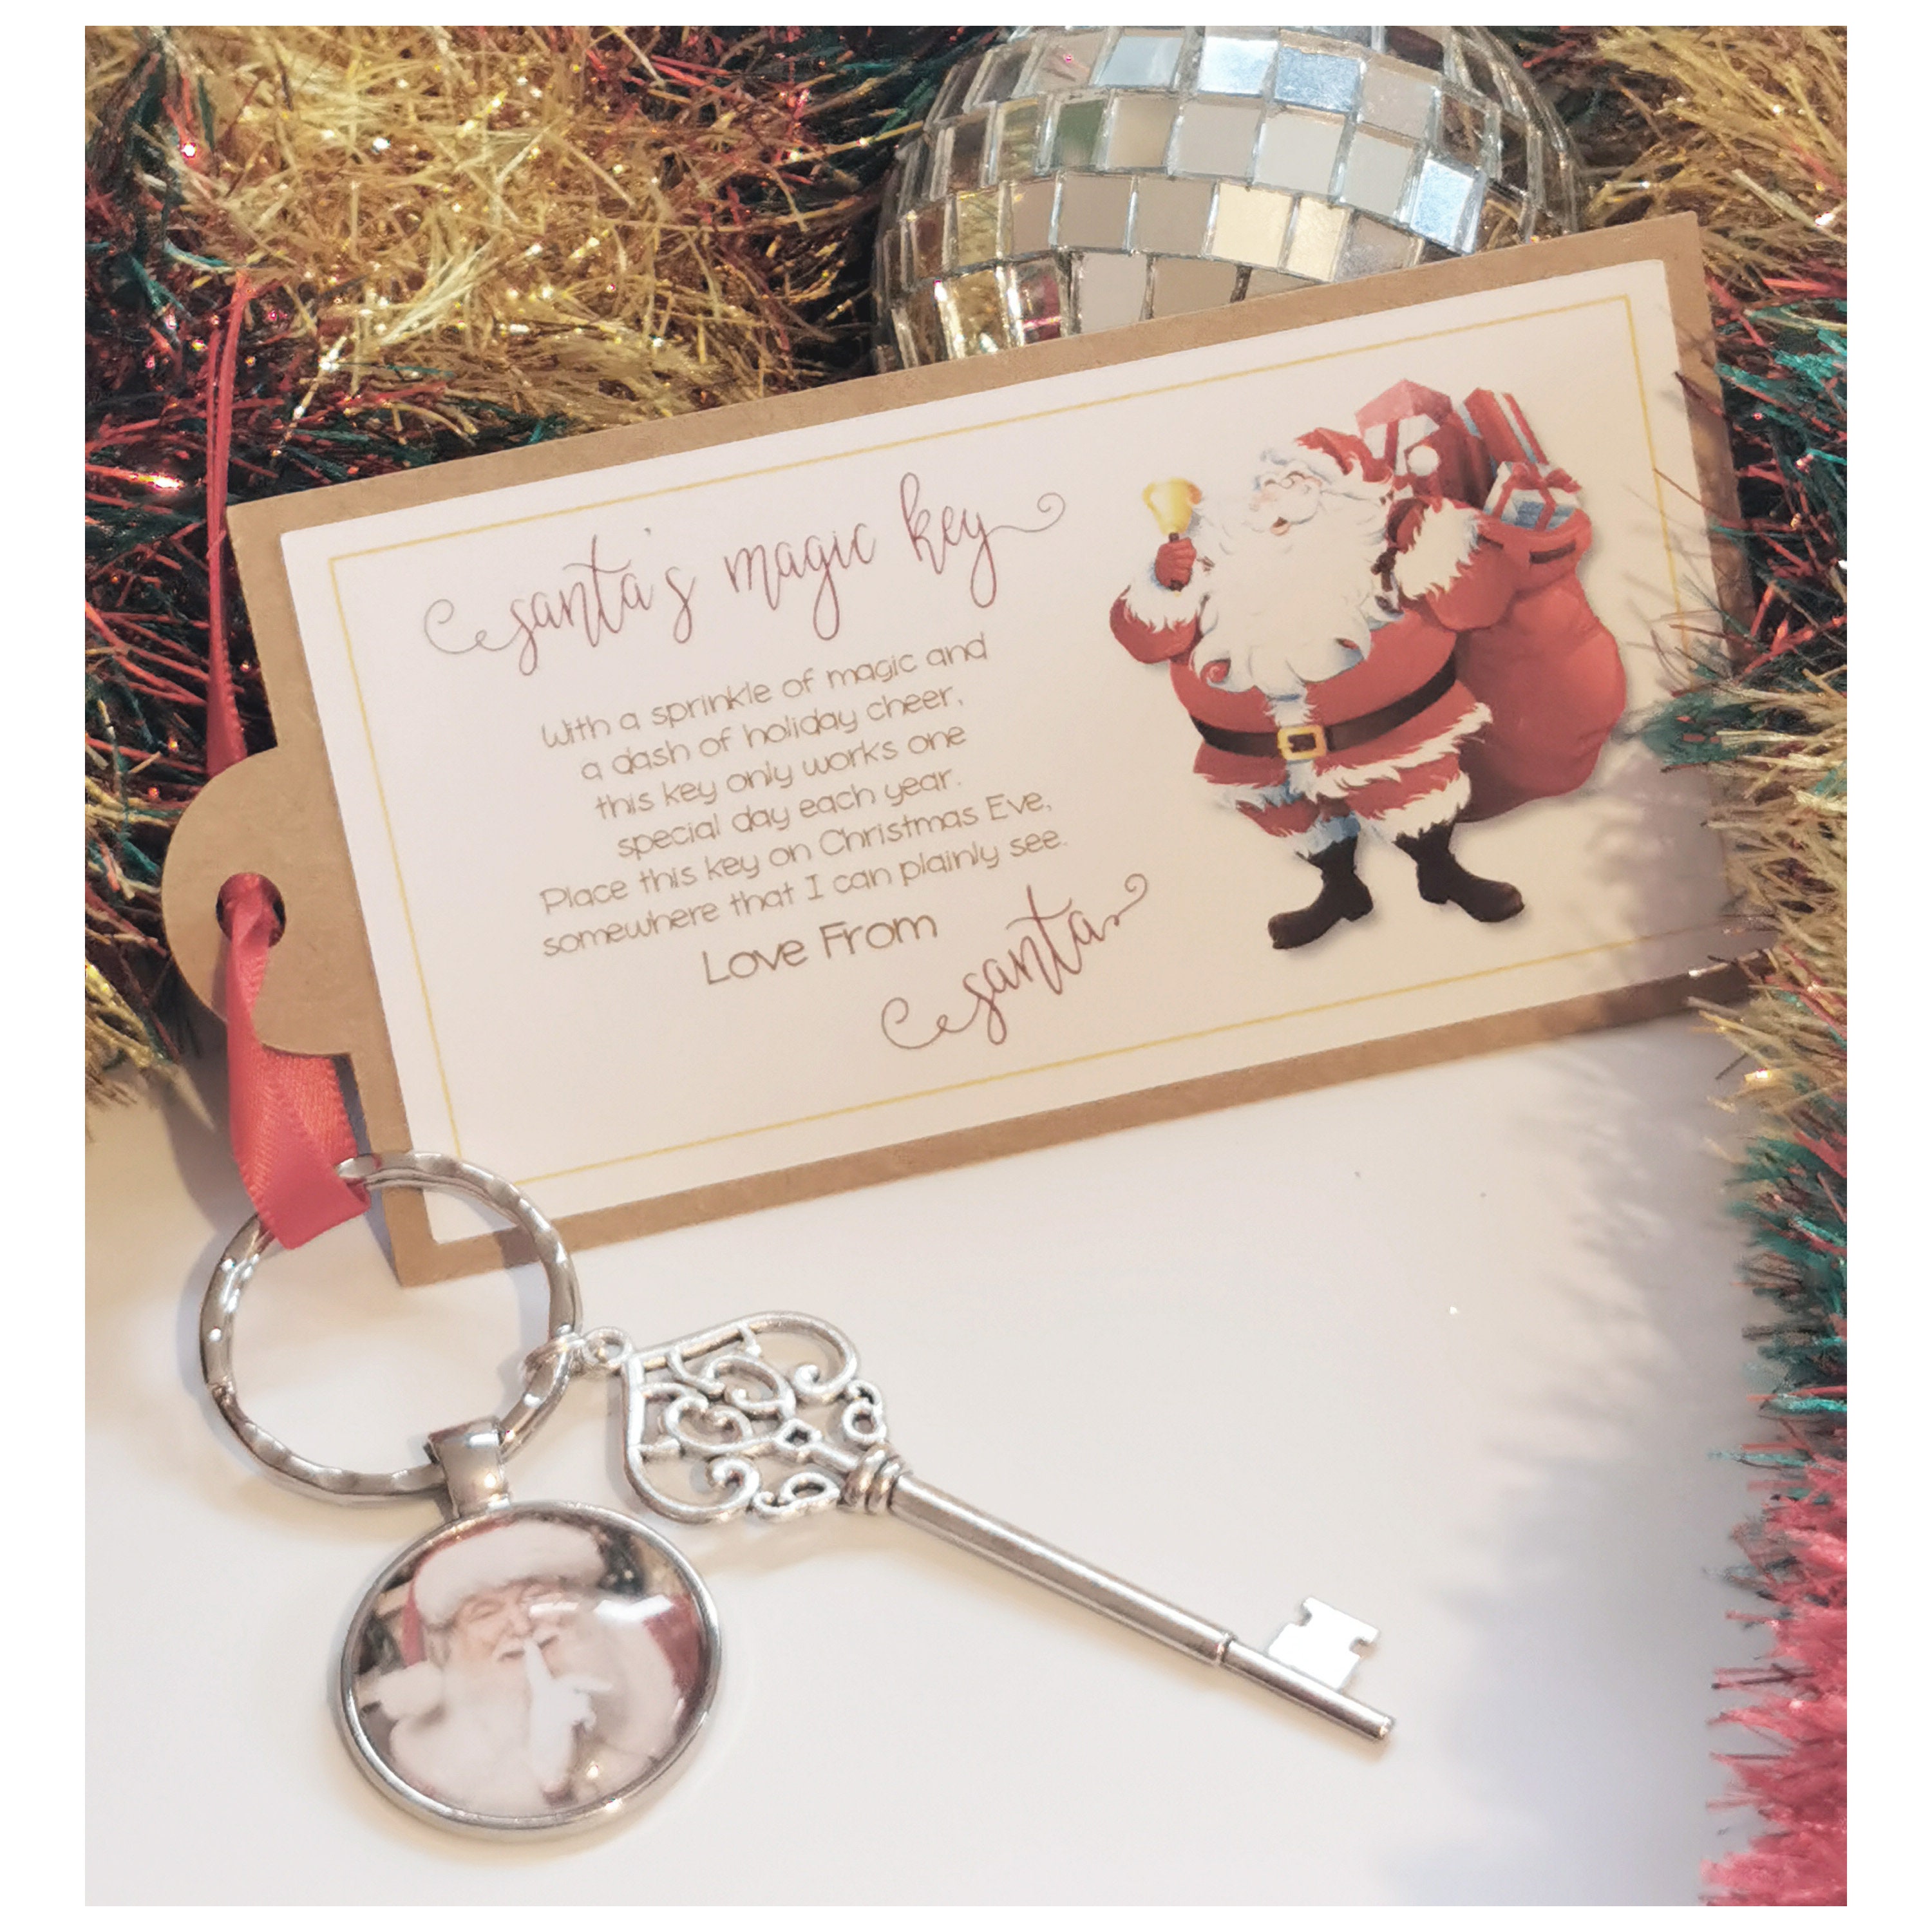  Makhry Gemischte 30 Vintage Schlüssel Hochzeit Schlüssel Santa  Schlüssel Weihnachts Schlüssel Alte Schlüssel für Hochzeit/Weihnachts  Dekoration(Gunblack)